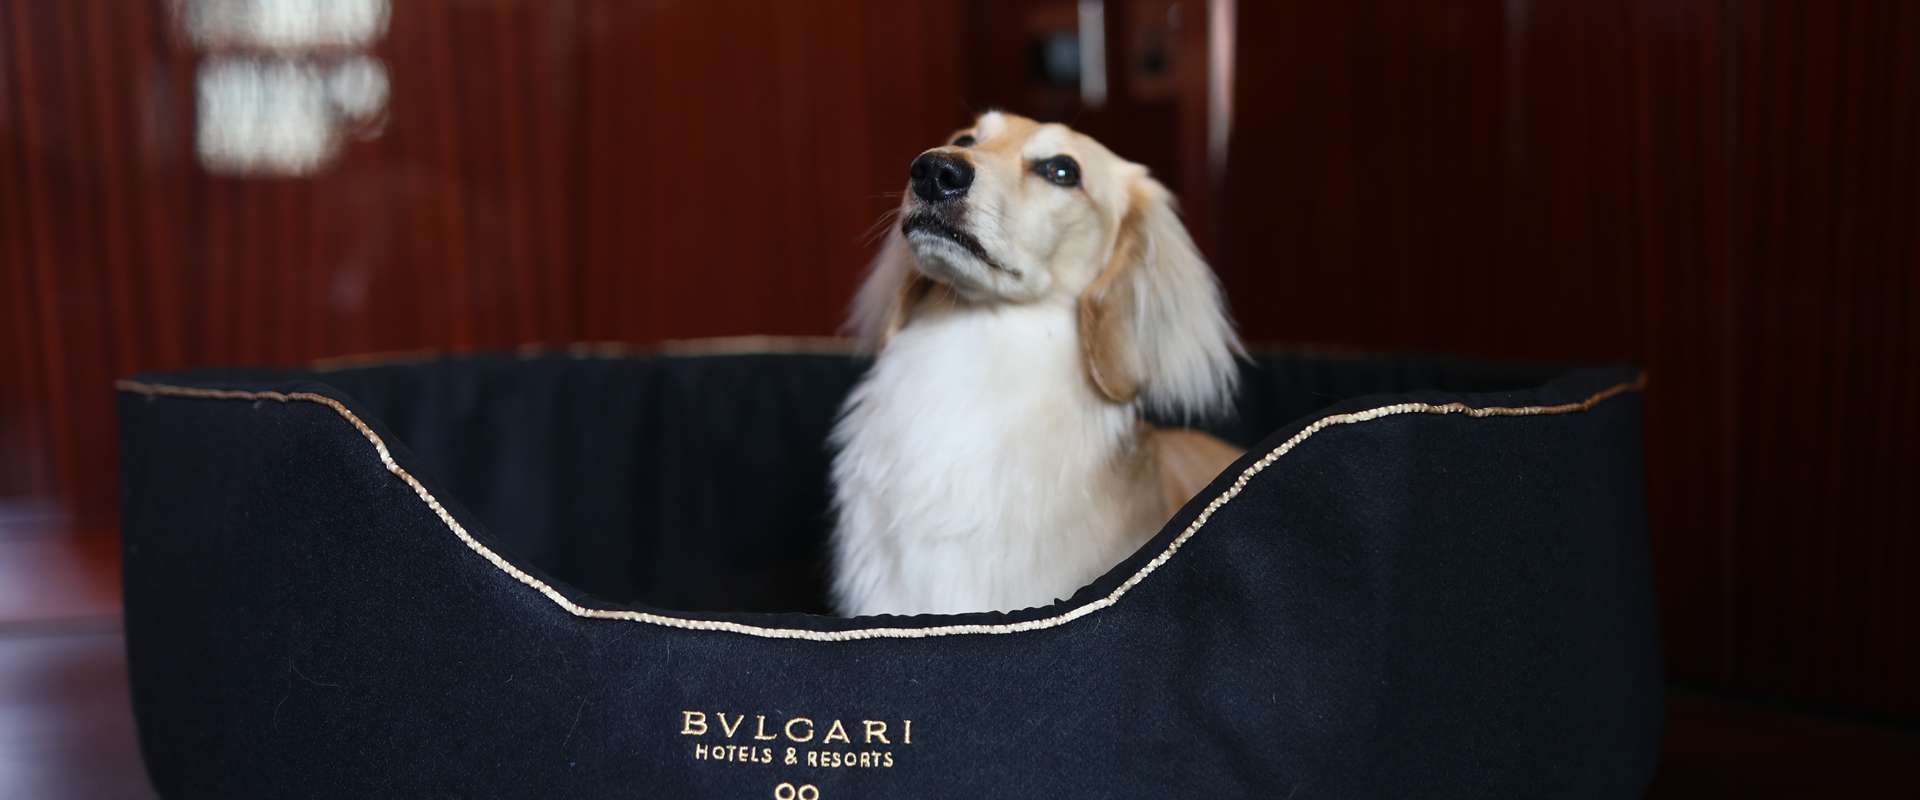 Bulgari Hotel London Experiences Pet Club